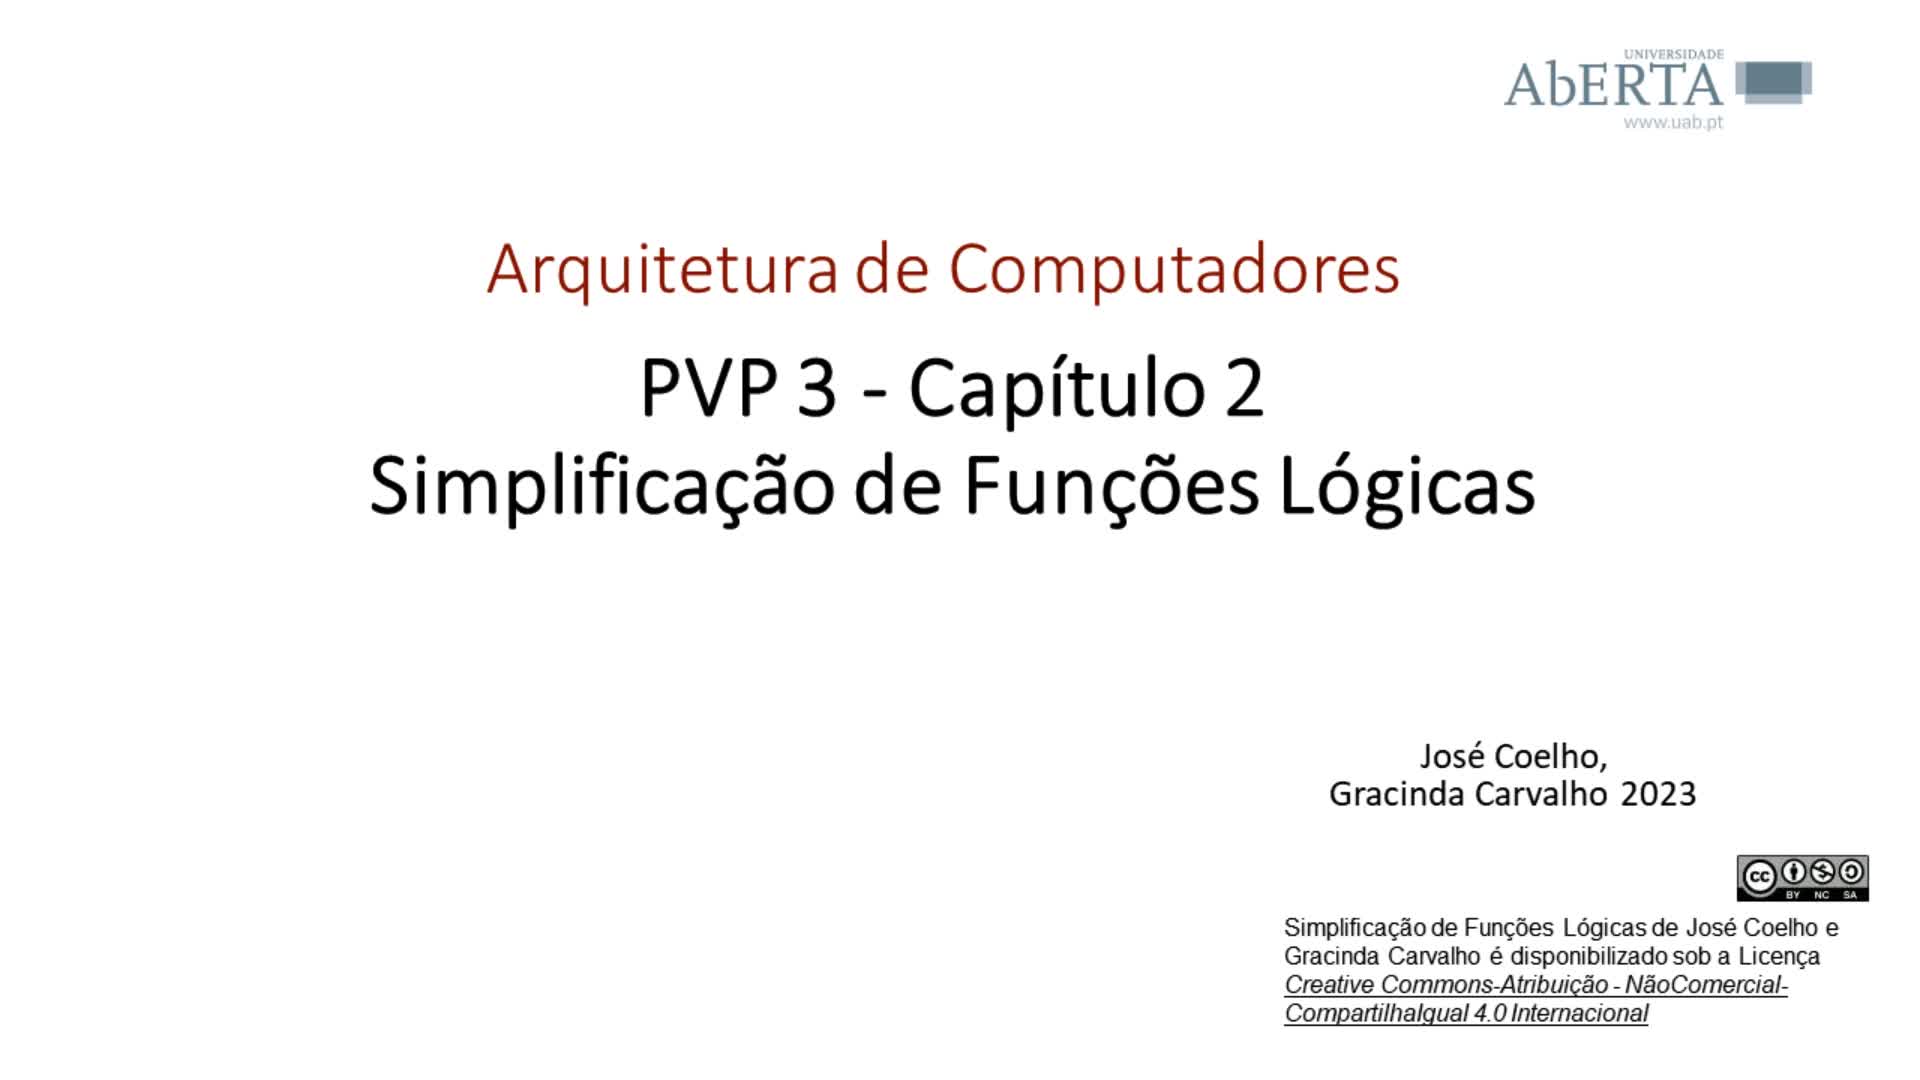  Arquitetura de Computadores. Capítulo 2 - Simplificação de funções lógicas